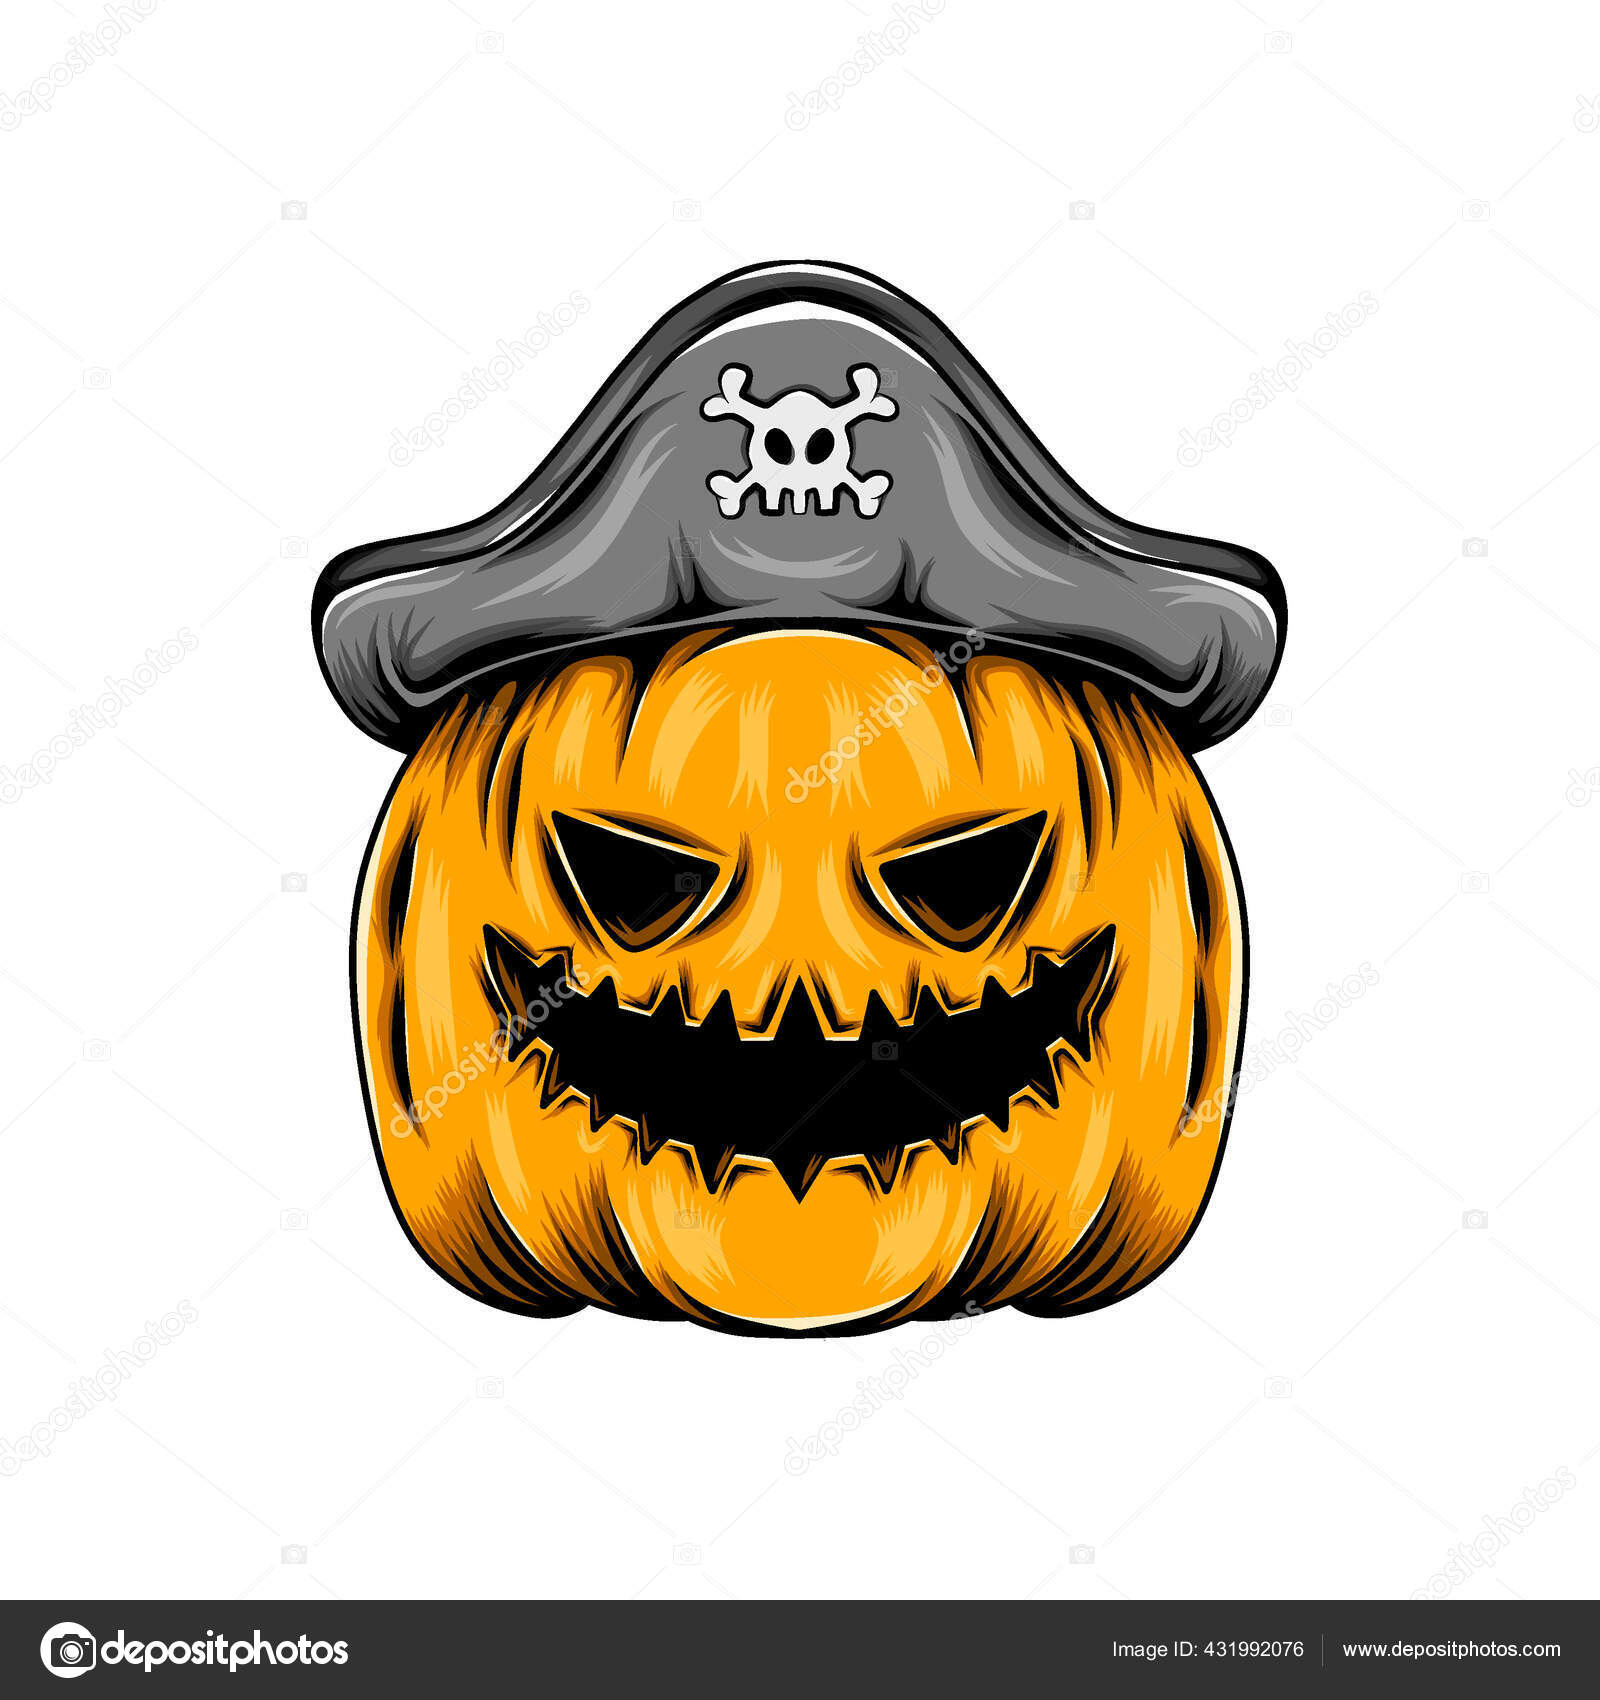 Ins)Piração: O que usar no Halloween